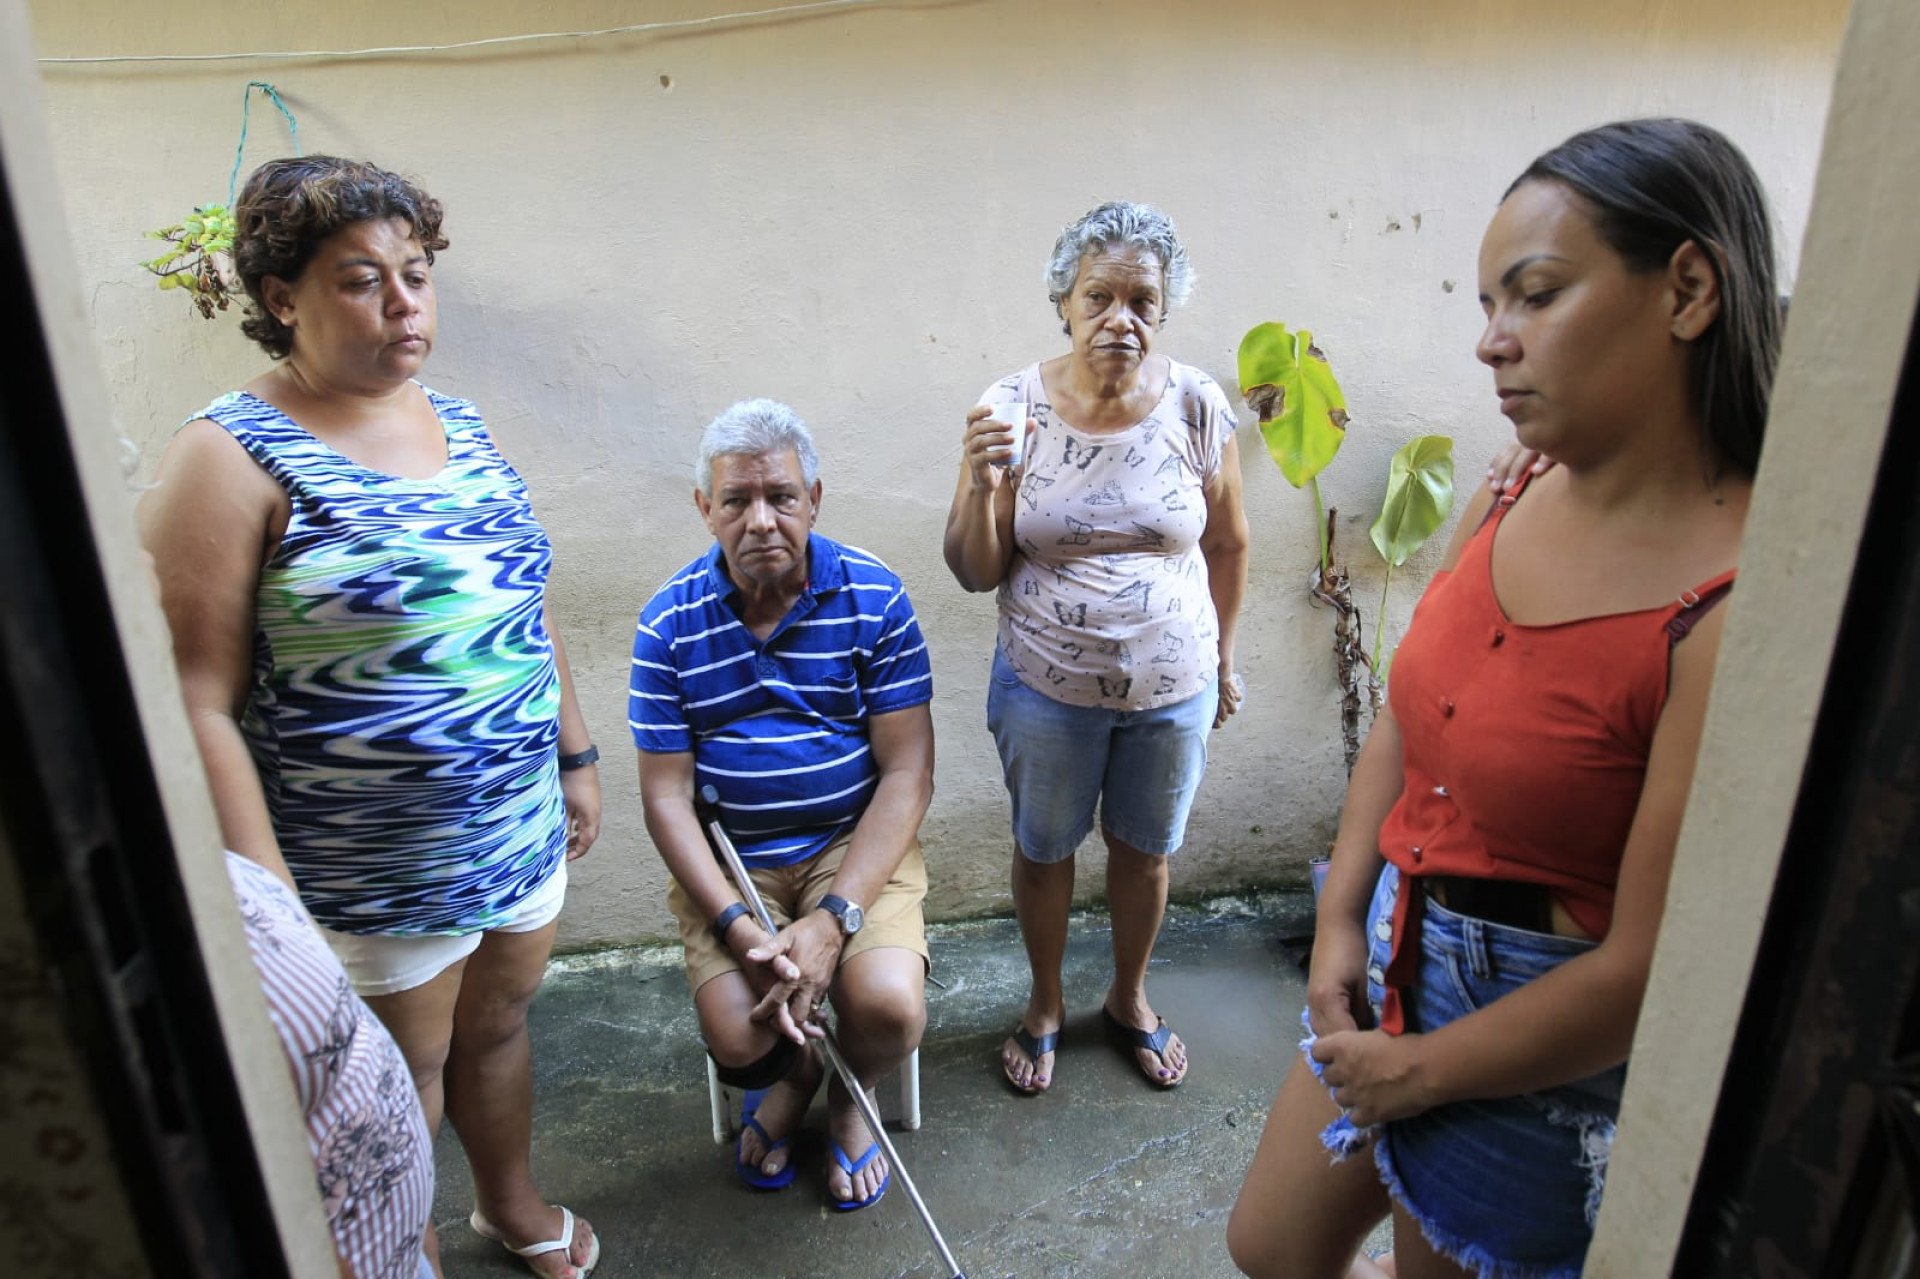 Moradores avaliam prejuízos e limpam imóveis um dia após rompimento de adutora inundar casas - Reginaldo Pimenta/Agência O Dia